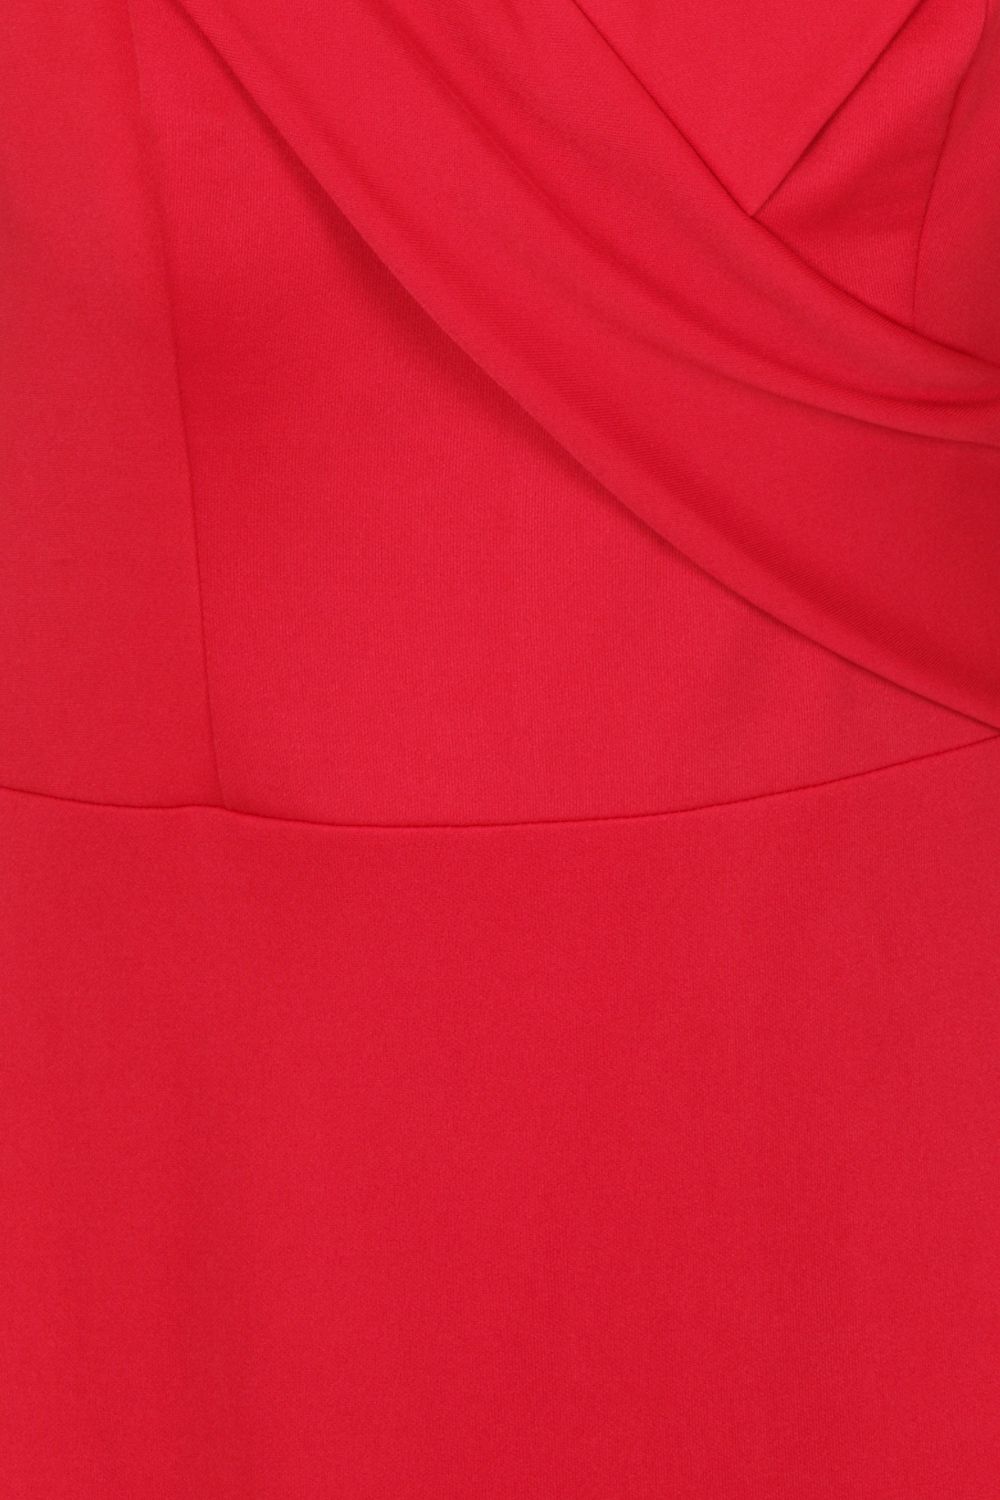 Camila Berry Red Bardot Maxi Fishtail Dress